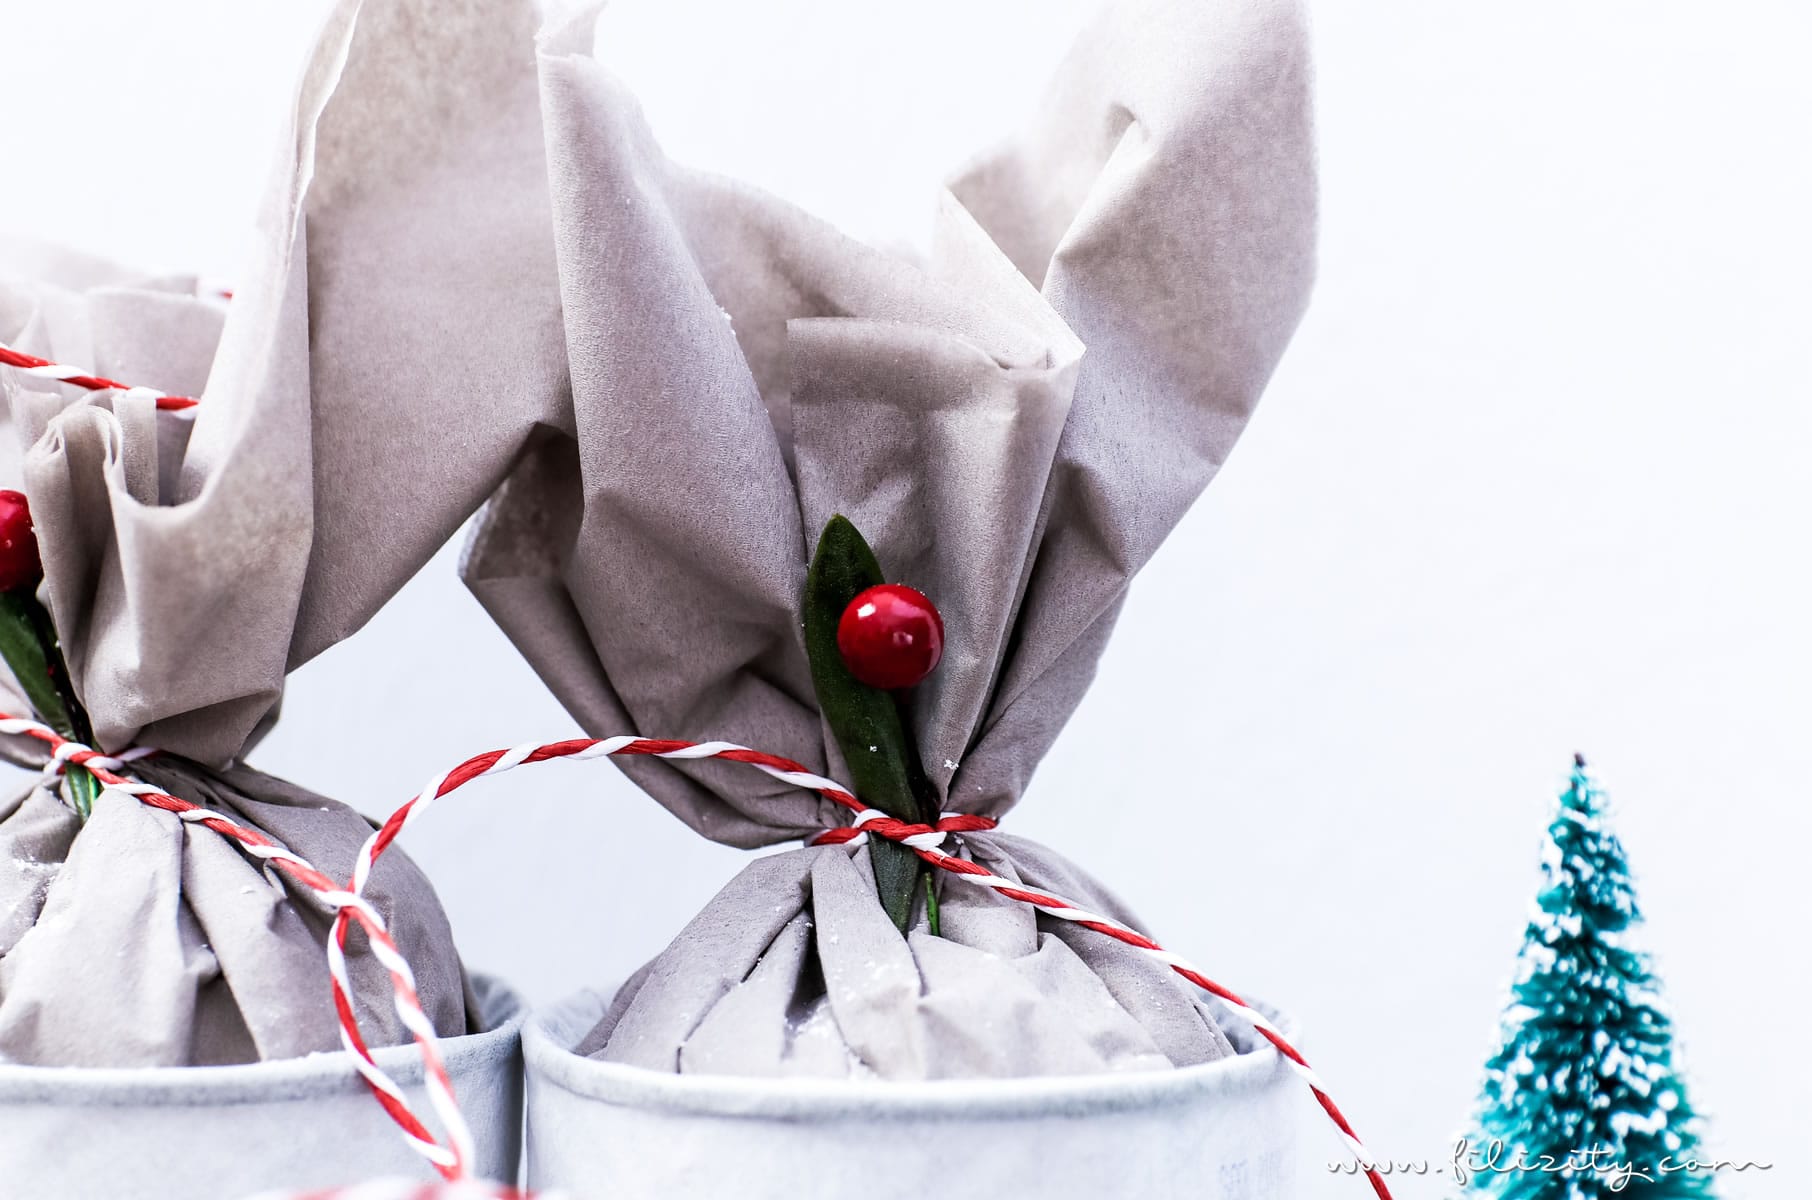 Weihnachts-DIY: Adventskalender basteln aus alten Dosen - Schönes Recycling/Upcycling-Projekt | Filizity.com | DIY-Blog aus dem Rheinland #weihnachten #adventskalender #recycling #upcycling